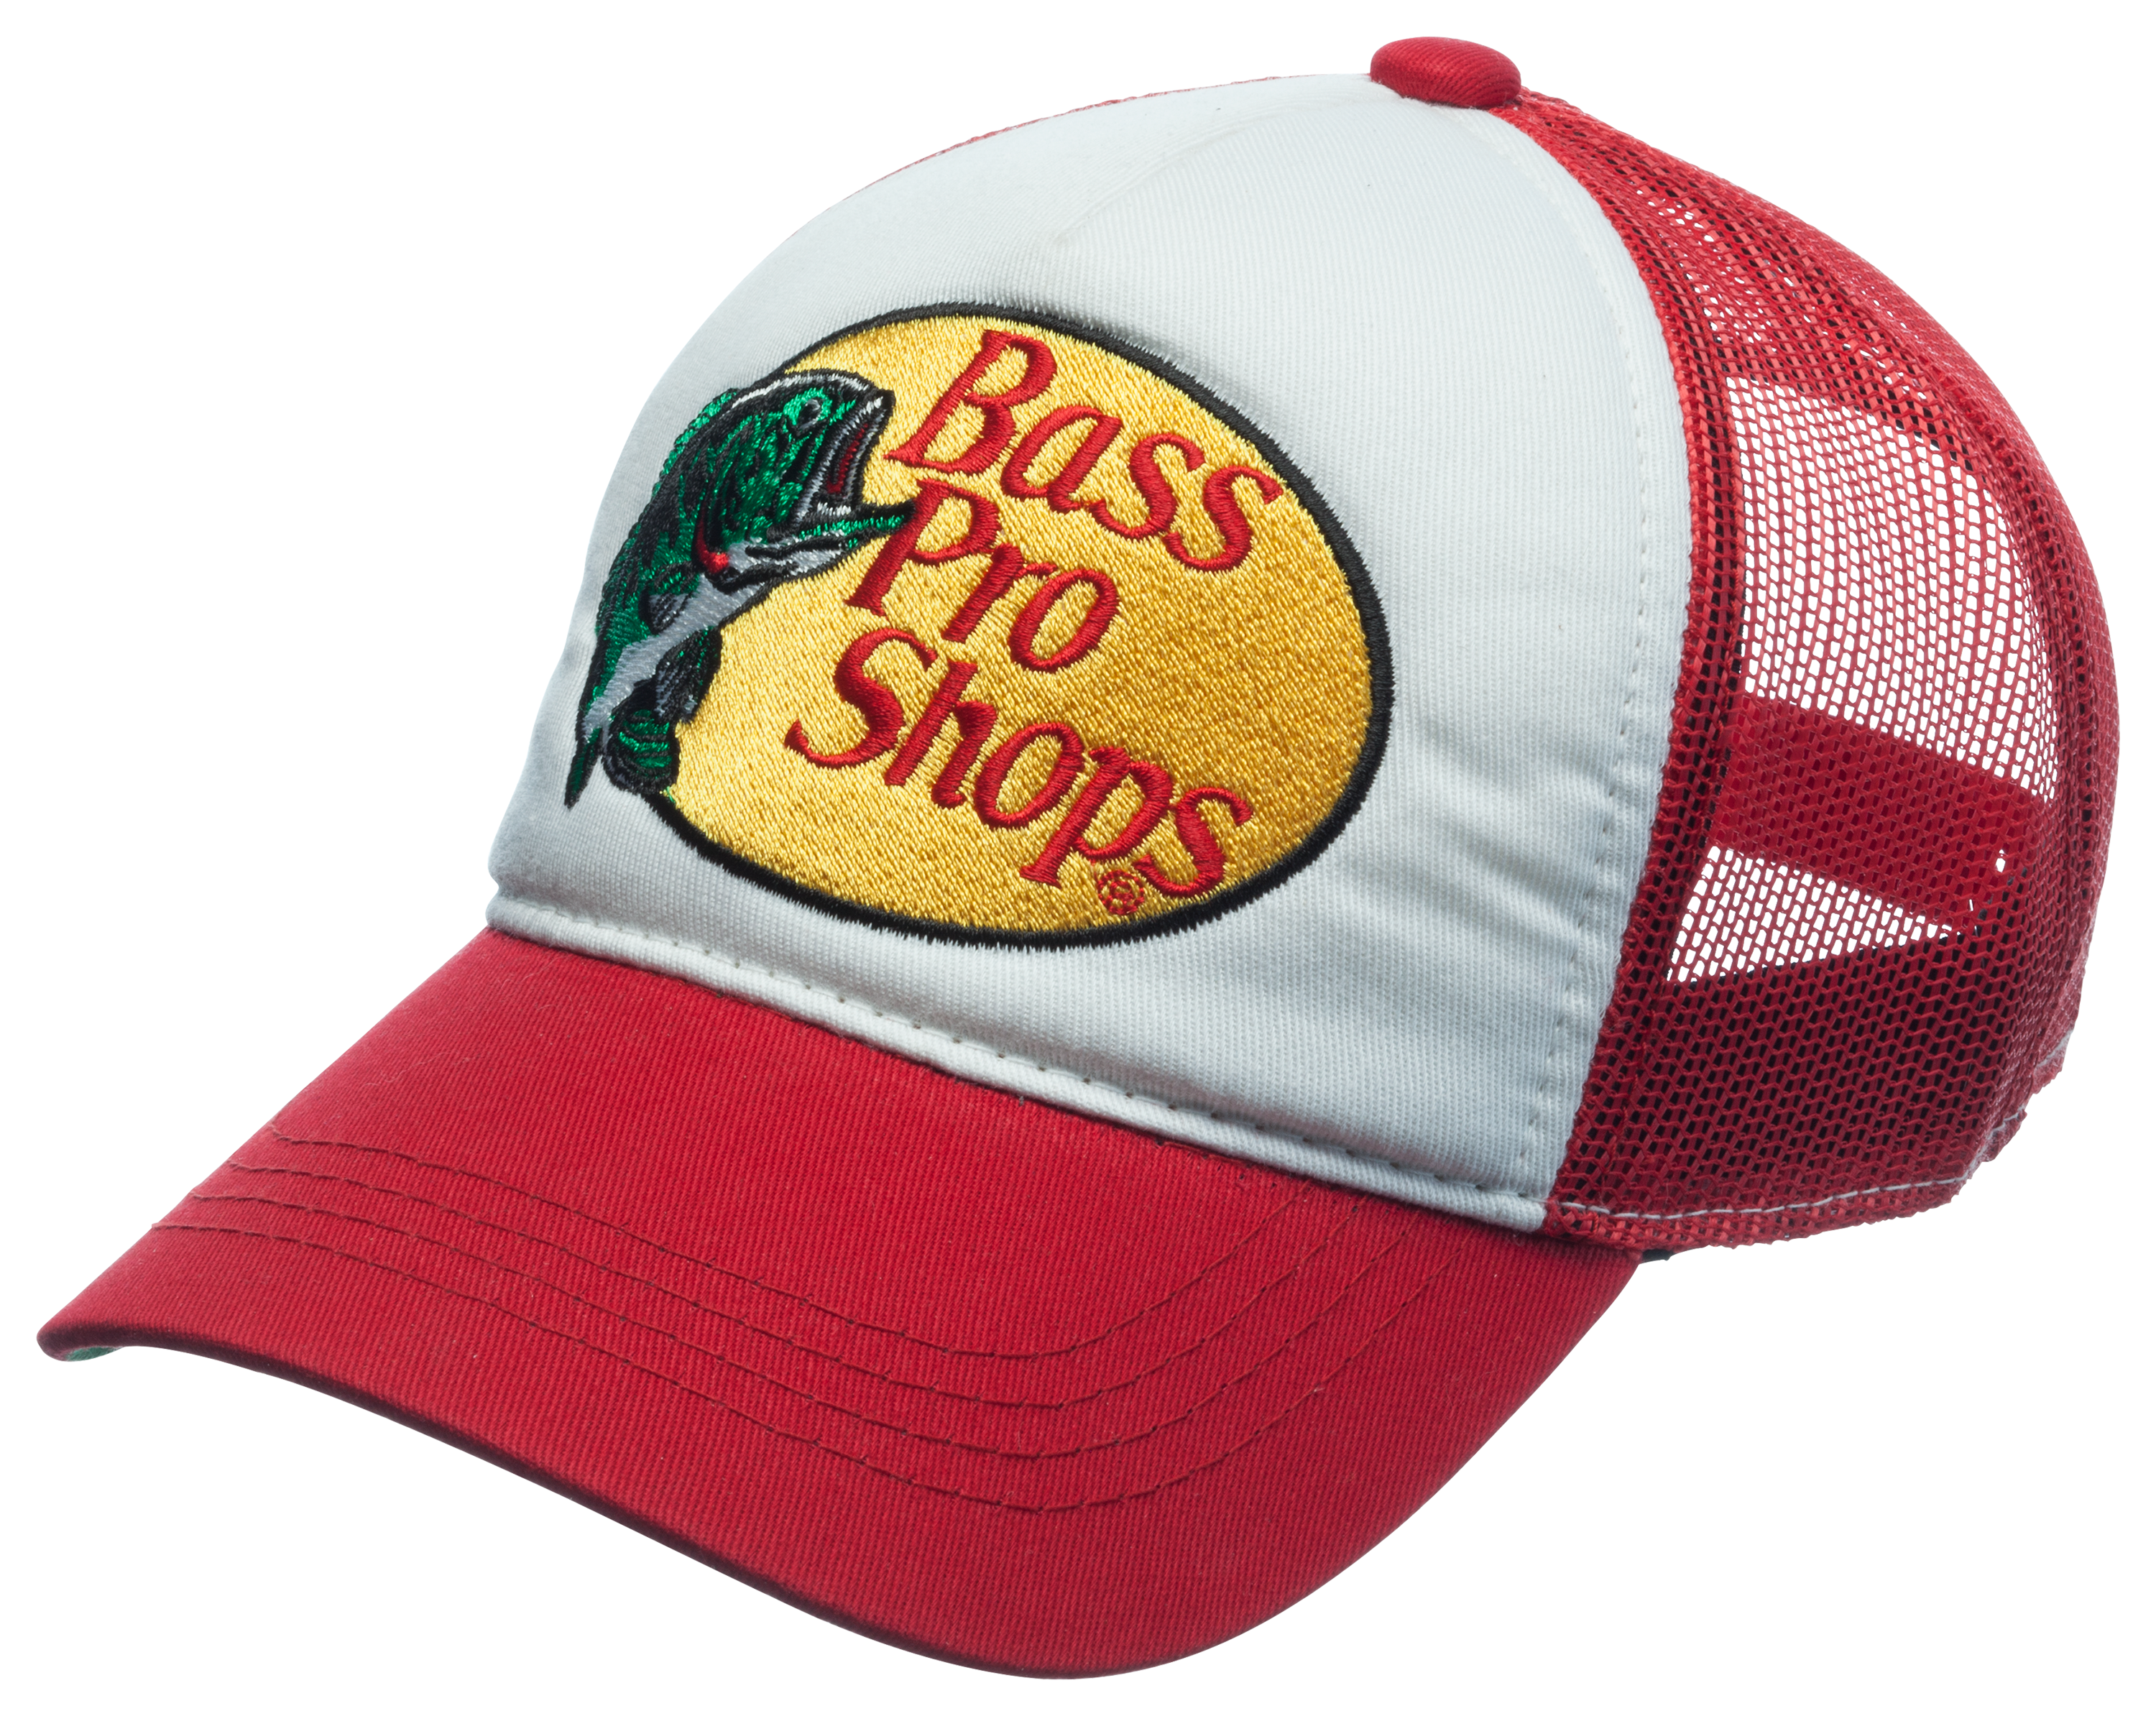 Bass Pro Shops Mesh Logo Trucker Hat for Kids - Black